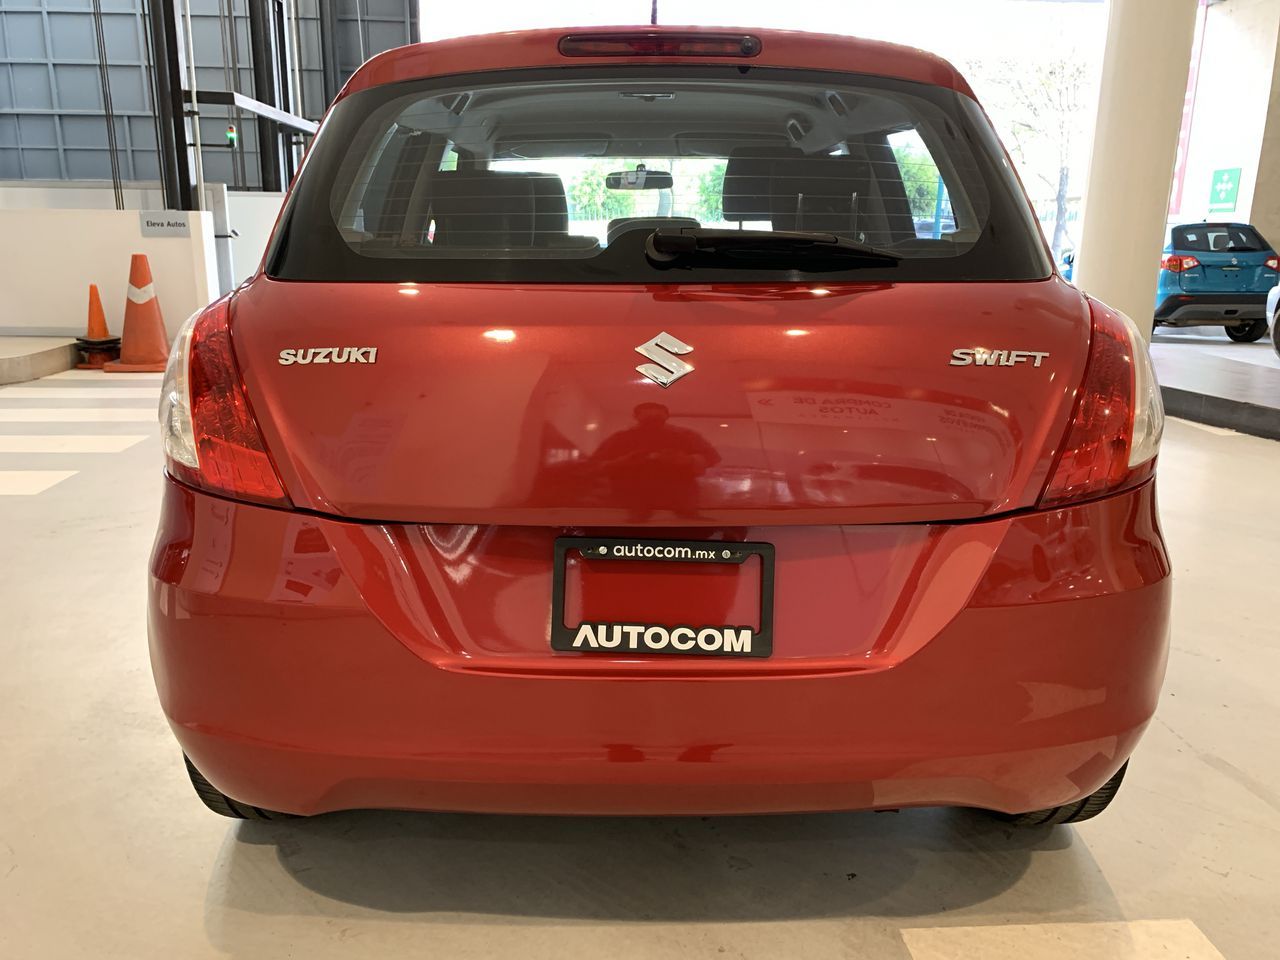 Suzuki Swift 2013